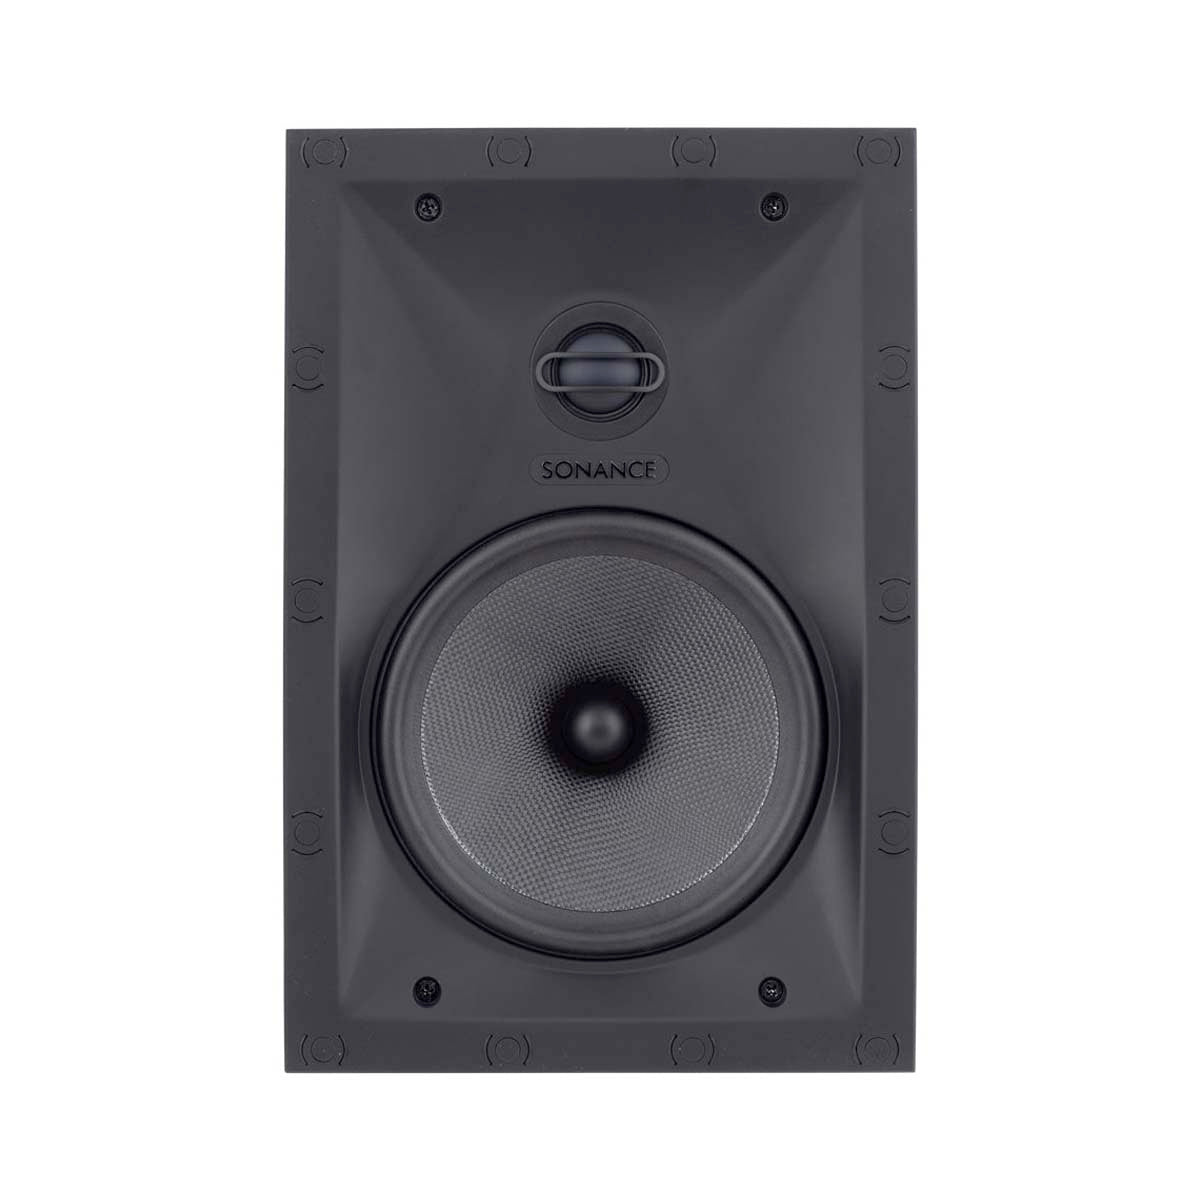 Sonance VP66 6.5" Rectangular Speakers